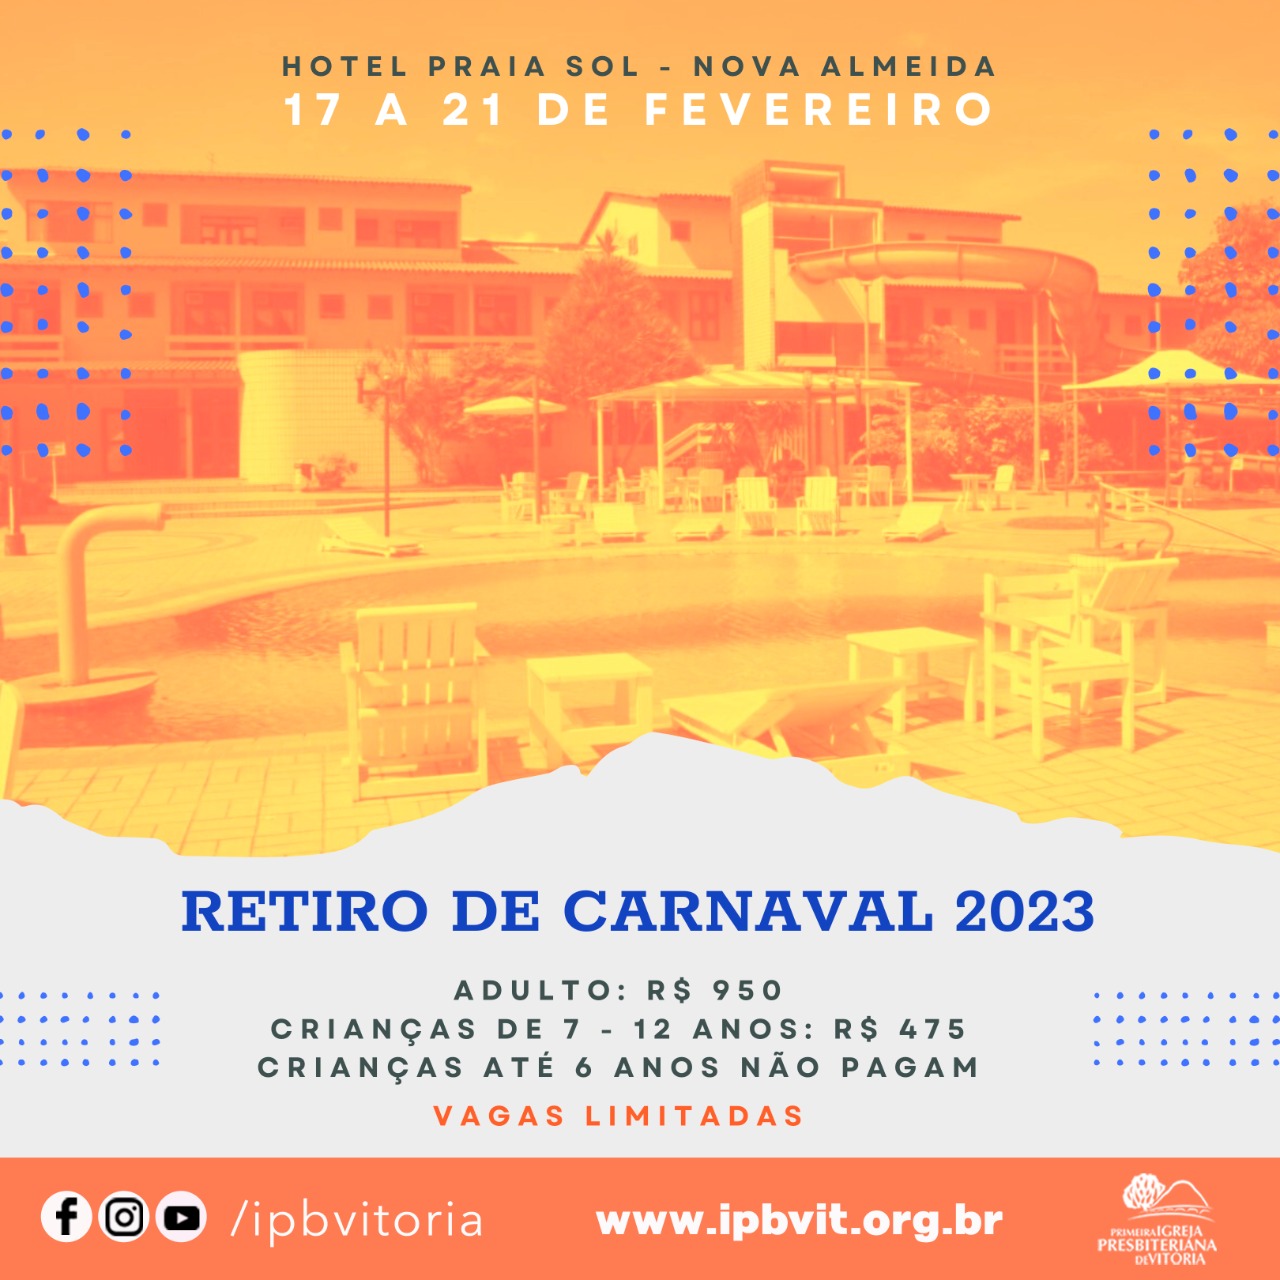 Retiro de Carnaval: como organizar um retiro inesquecível para os jovens da  sua igreja em 2022